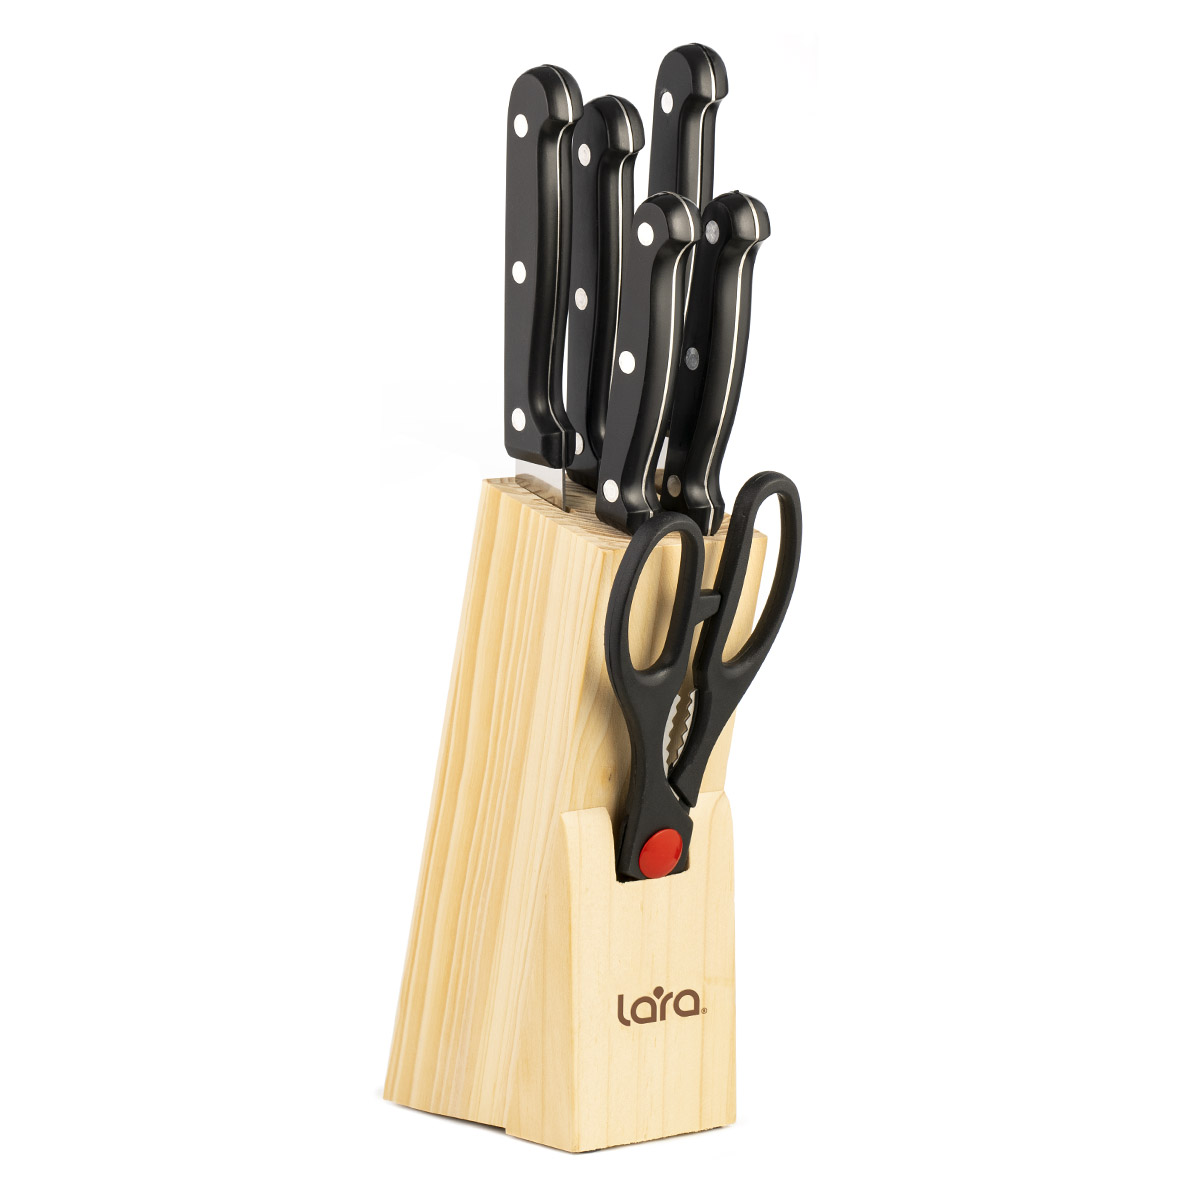 Набор ножей LARA LR05-53, 7 предметов: ДЕРЕВЯННАЯ ПОДСТАВКА + 5 ножей + ножницы